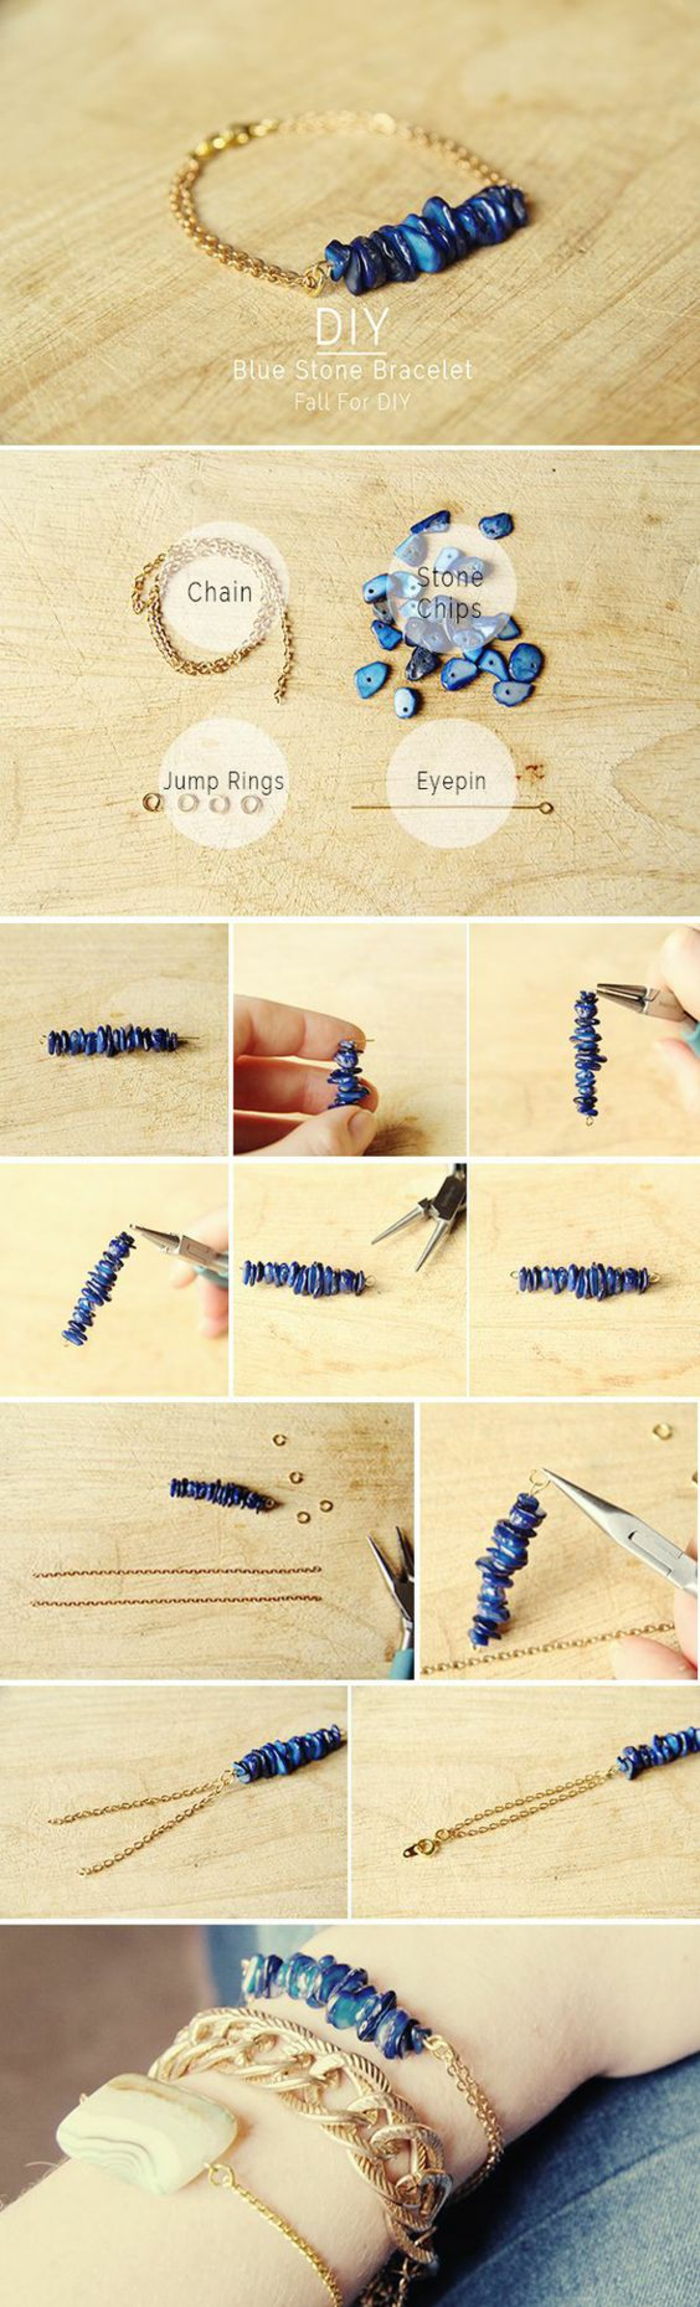 Lag armbånd selv: kjede armbånd laget av lapis lazuli steiner, smykker tang, kjede pin, hoppe ringer